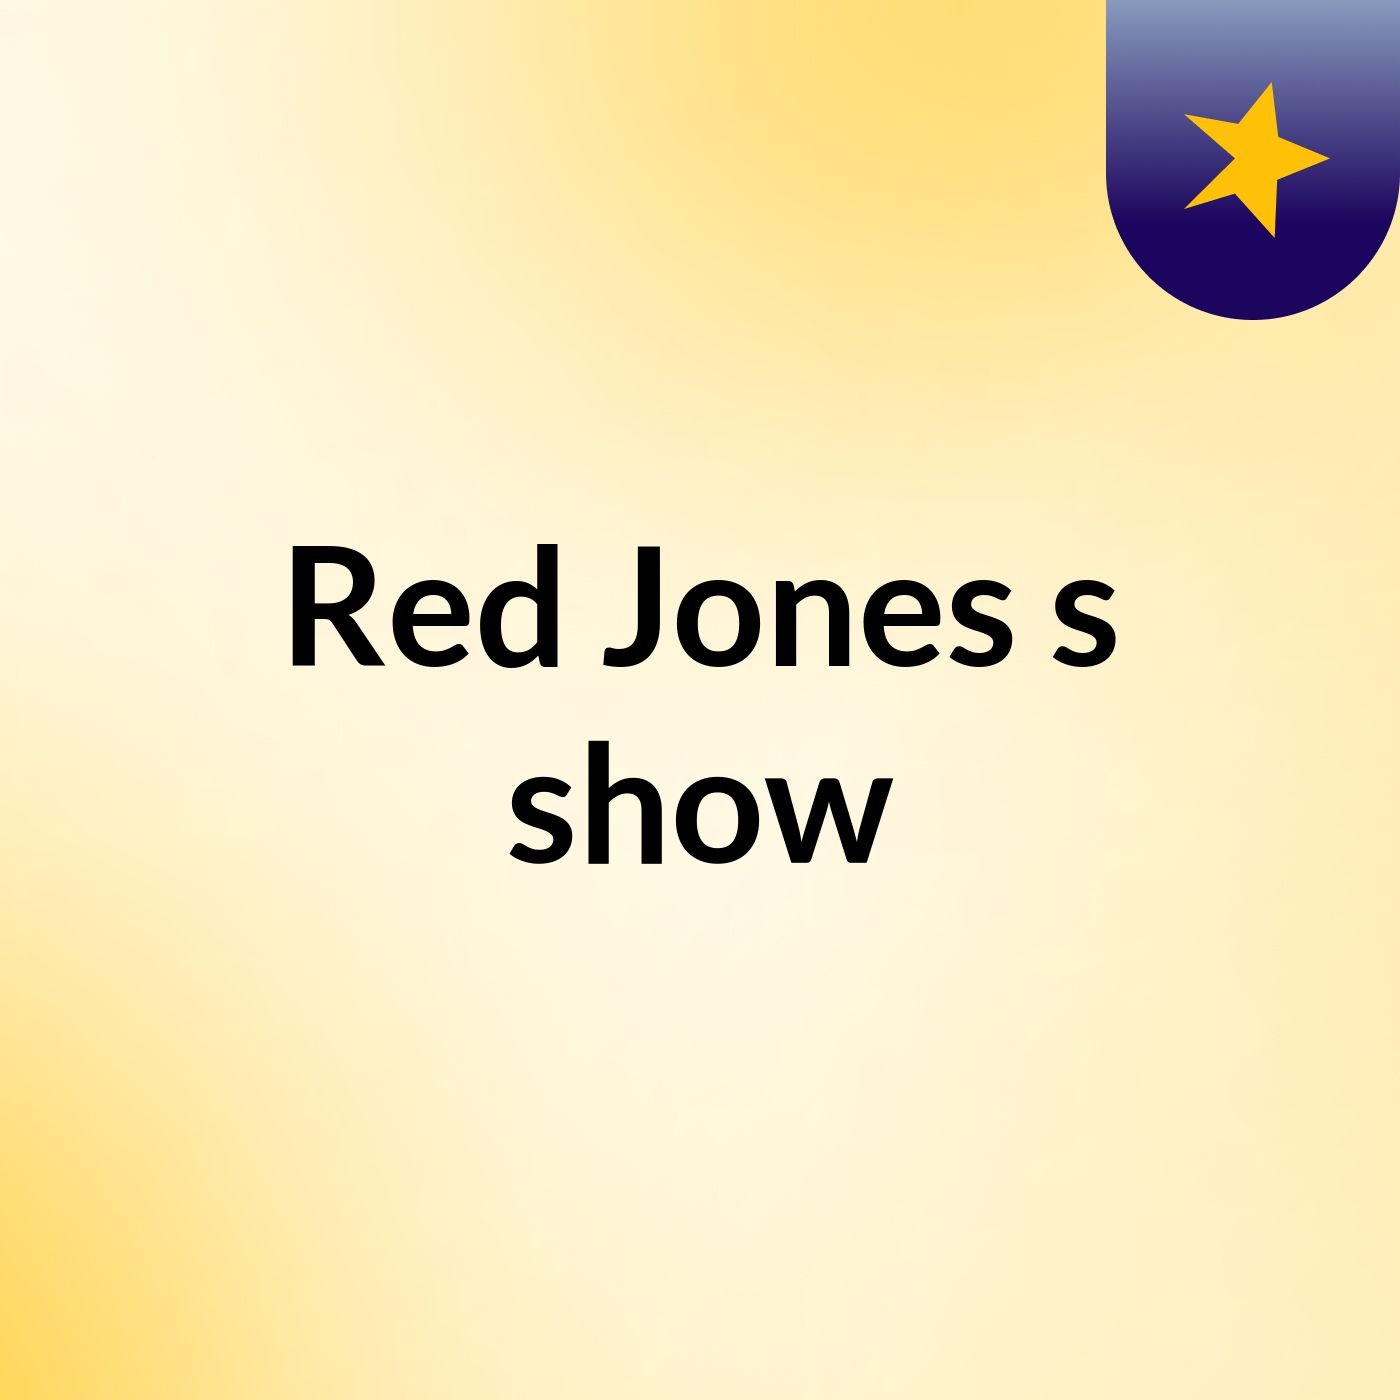 Red Jones's show